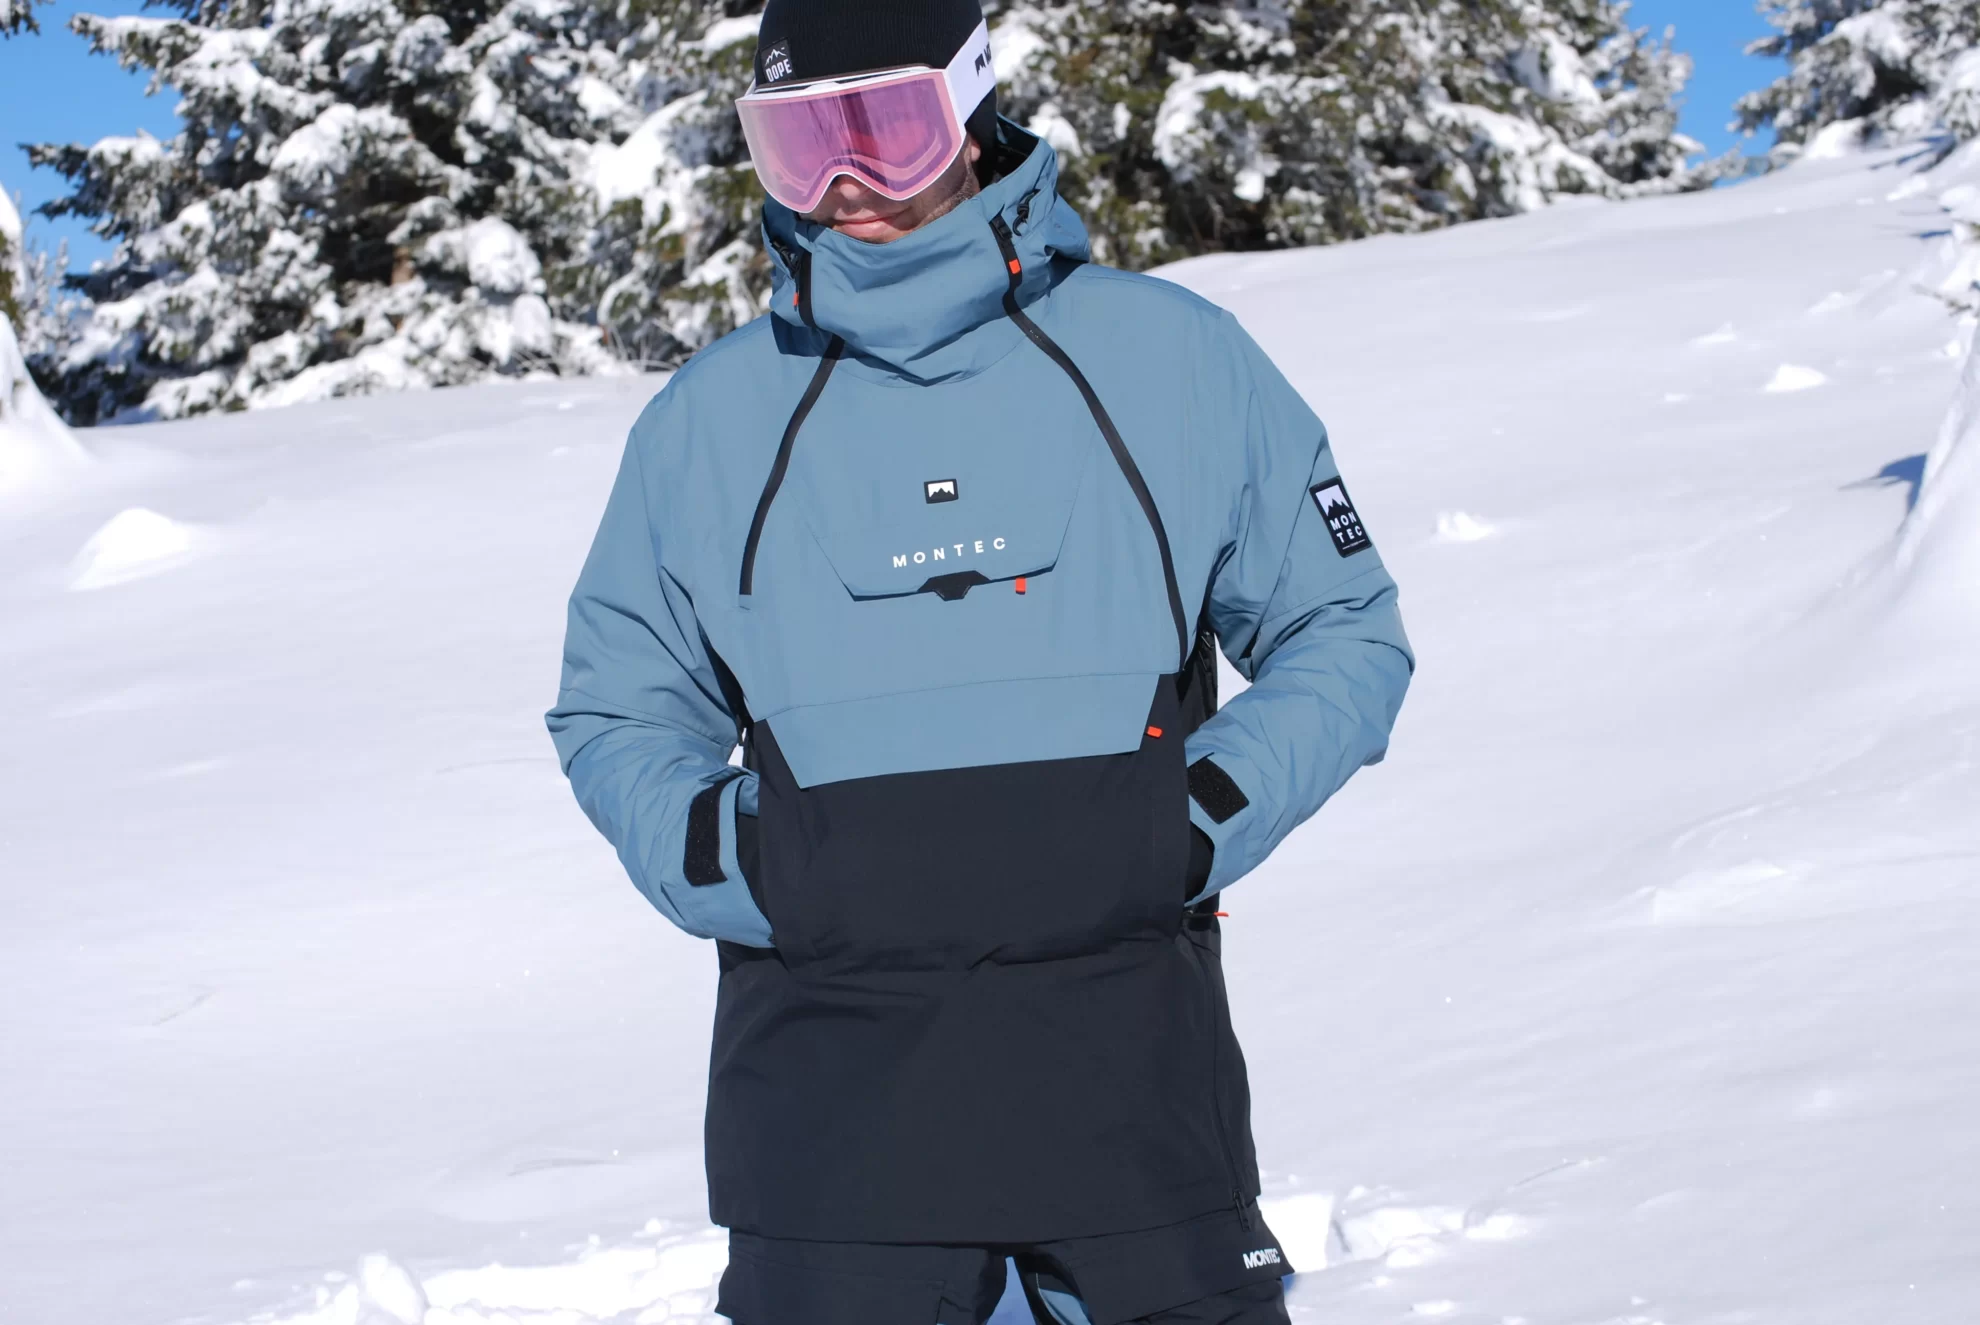 Skieur regardant devant lui avec la veste de ski et les mains dans les poches.